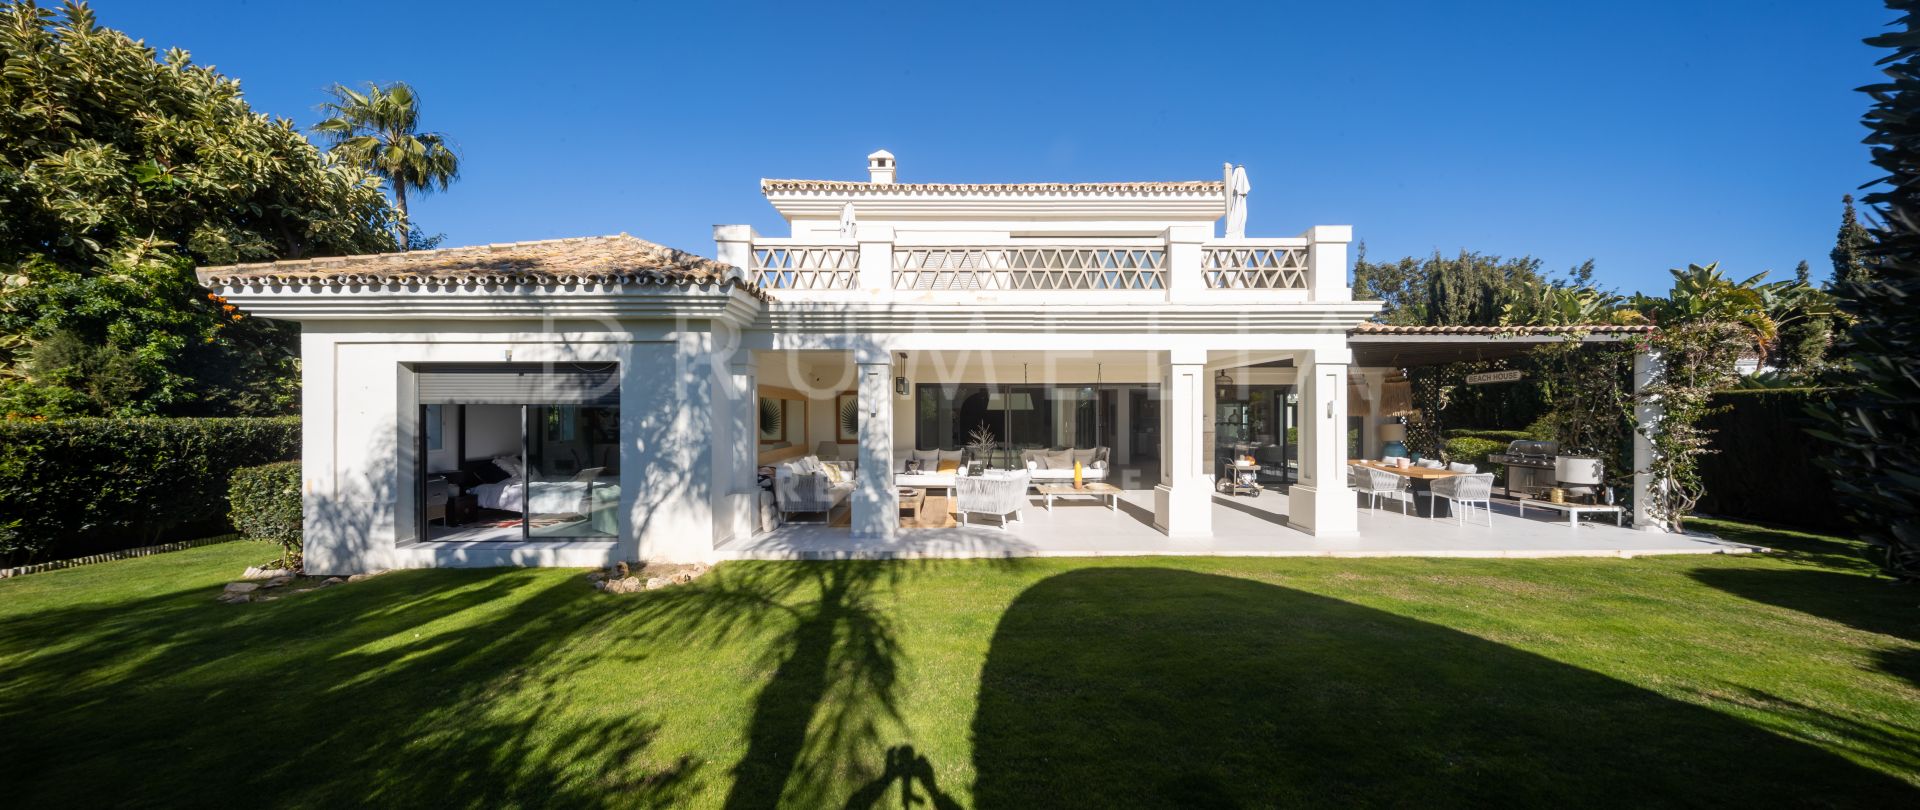 Impressionnante villa de luxe au style méditerranéen et aux caractéristiques modernes à Casasola.